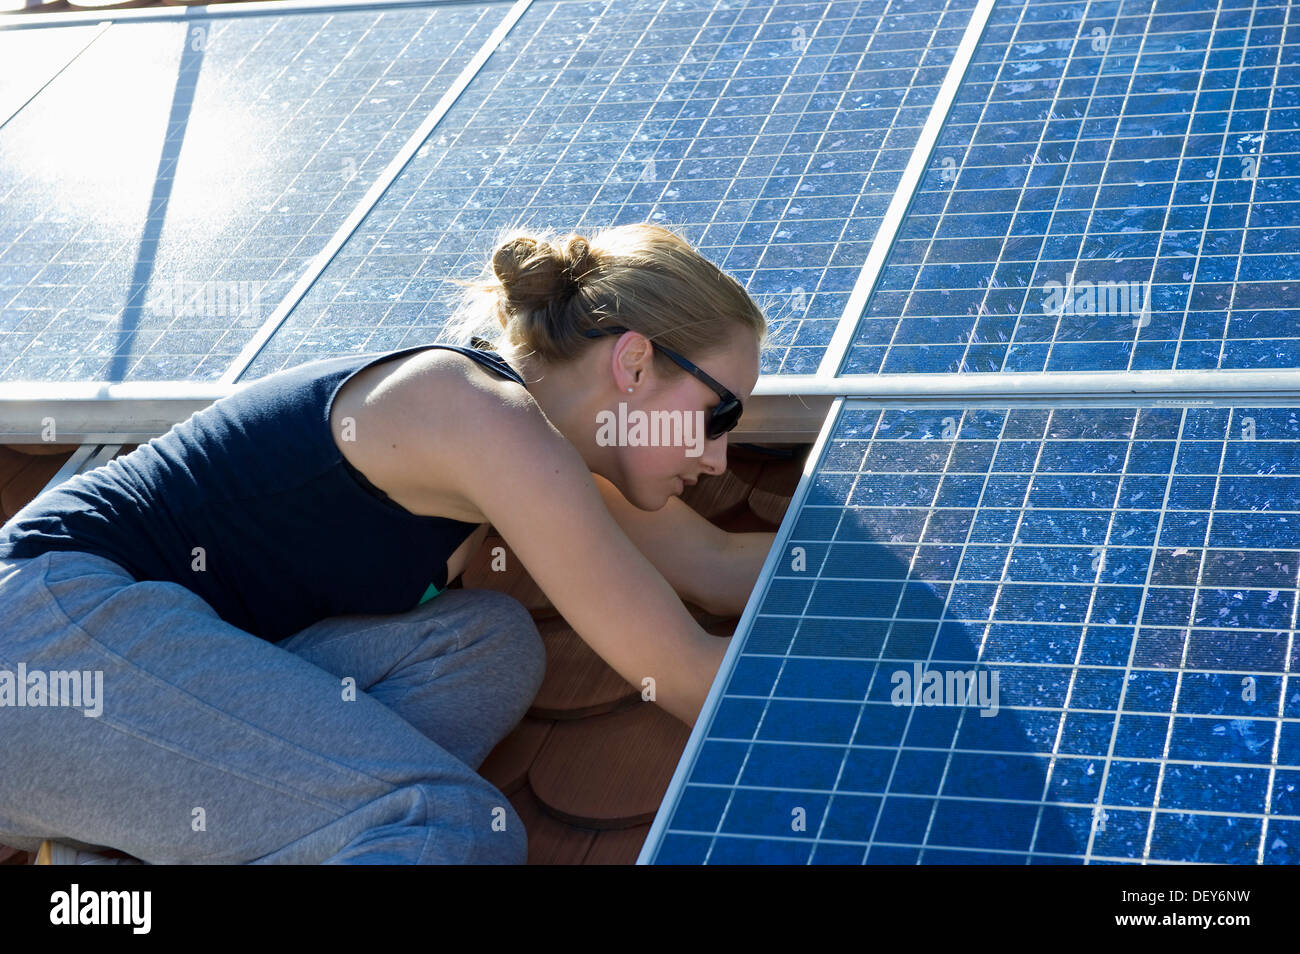 Studente di installare un sistema solare come parte di un progetto scolastico Foto Stock